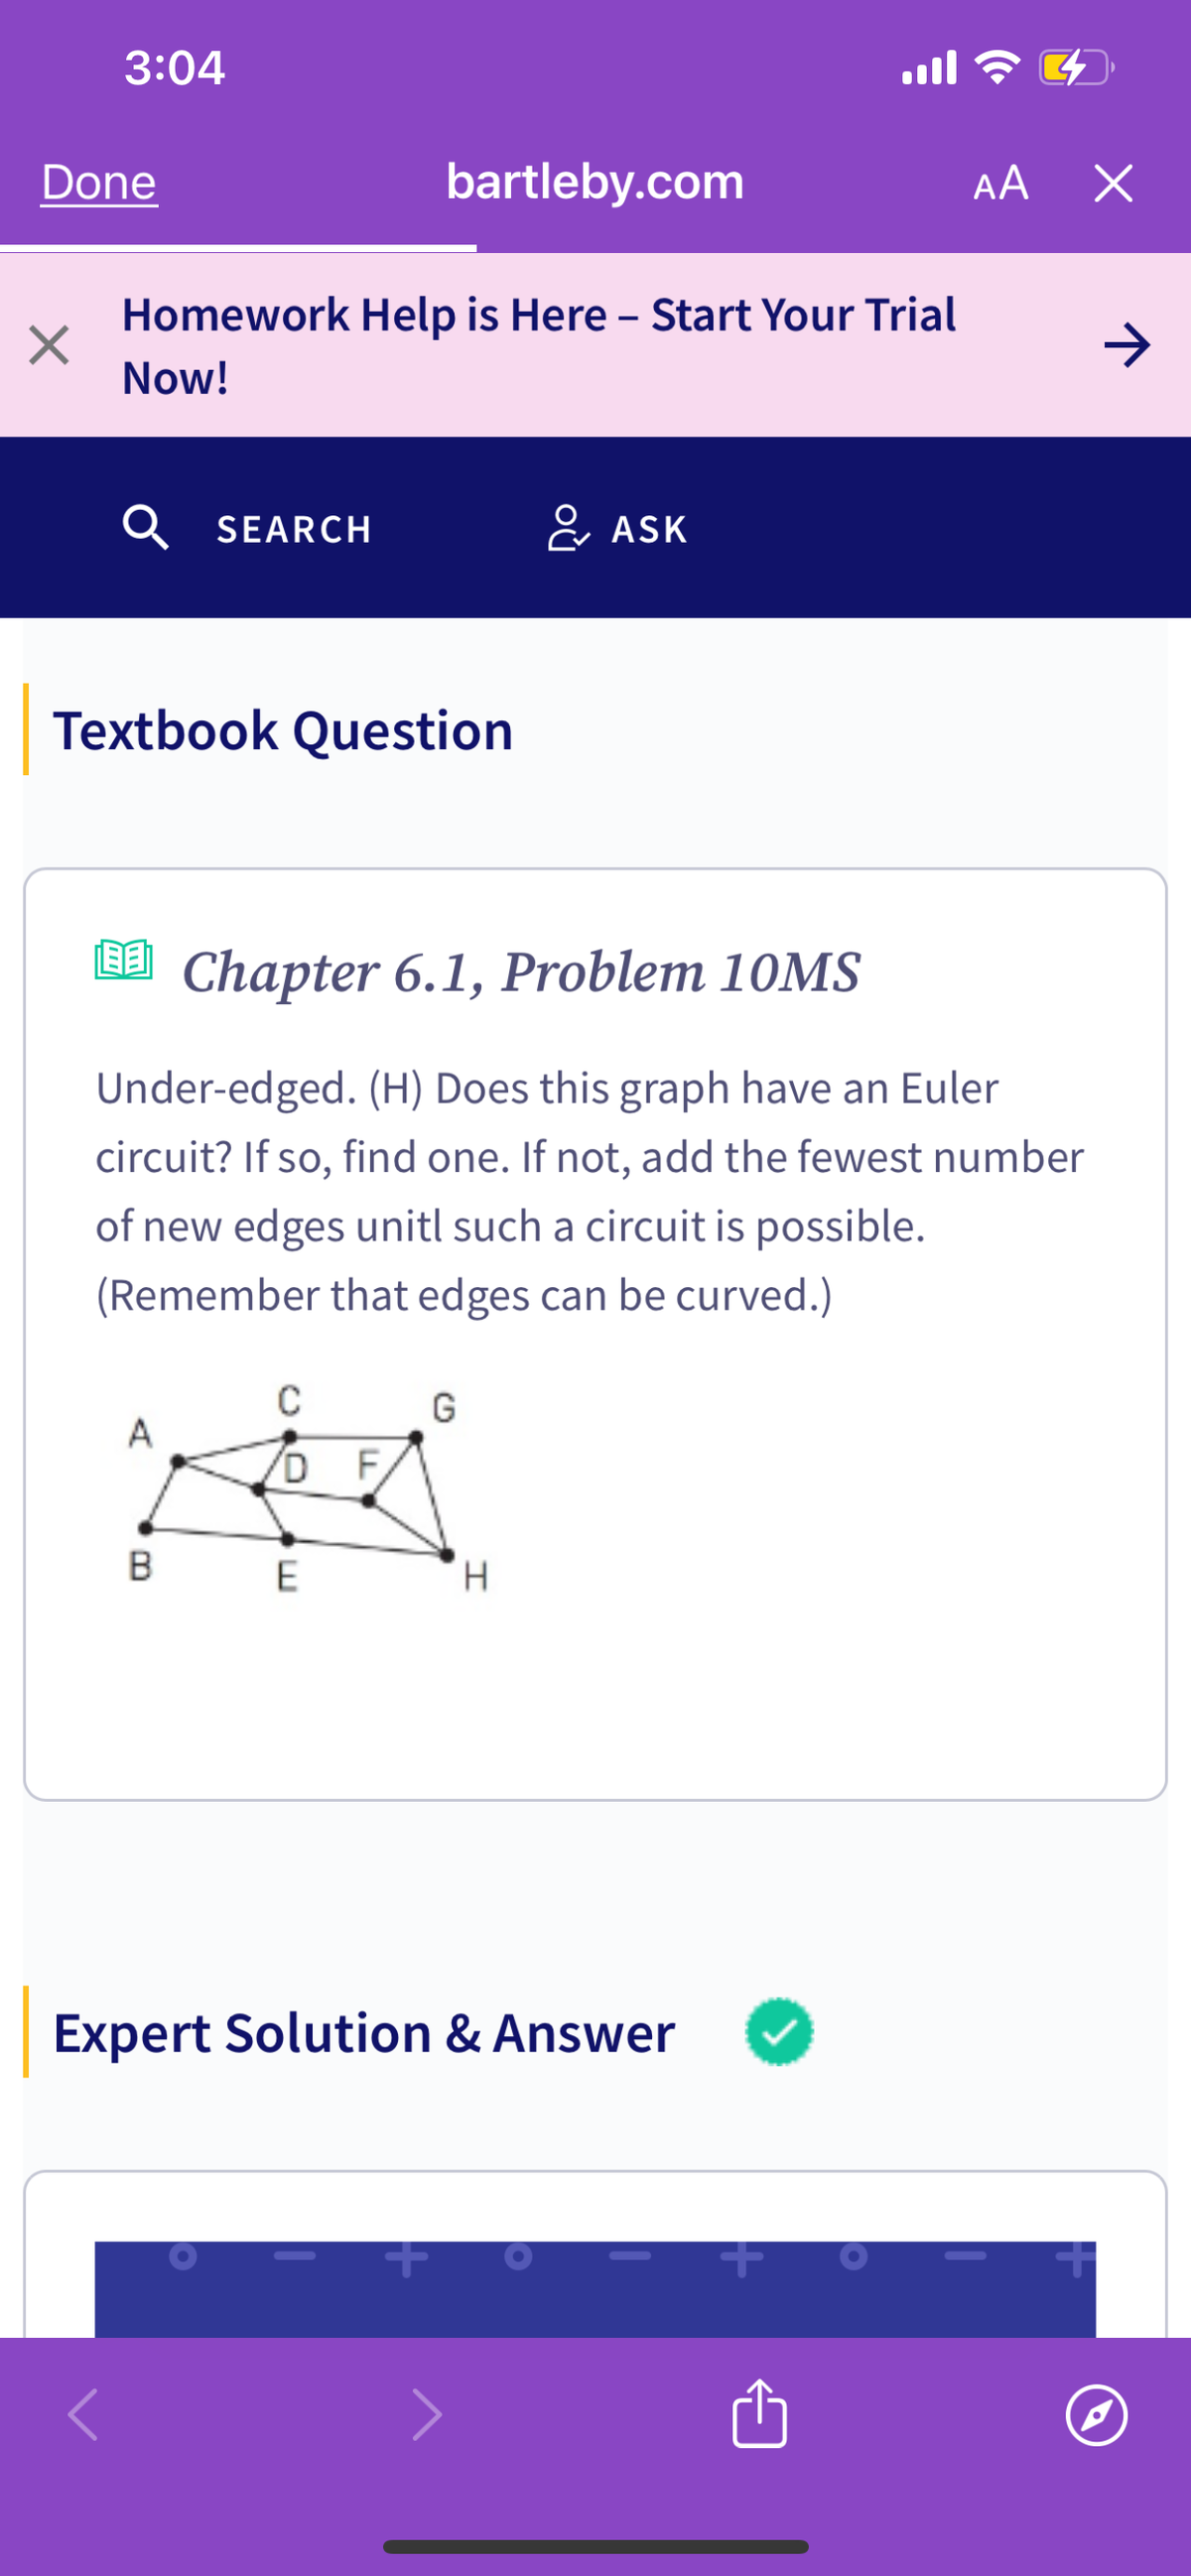 3:04
ฟล
AA
Х
Done
bartleby.com
-
Homework Help is Here – Start Your Trial
Now!
Q SEARCH
ASK
Textbook Question
[] Chapter 6.1, Problem 10MS
Under-edged. (H) Does this graph have an Euler
circuit? If so, find one. If not, add the fewest number
of new edges unitl such a circuit is possible.
(Remember that edges can be curved.)
C
G
DF
B
E
H
Expert Solution & Answer
+
+